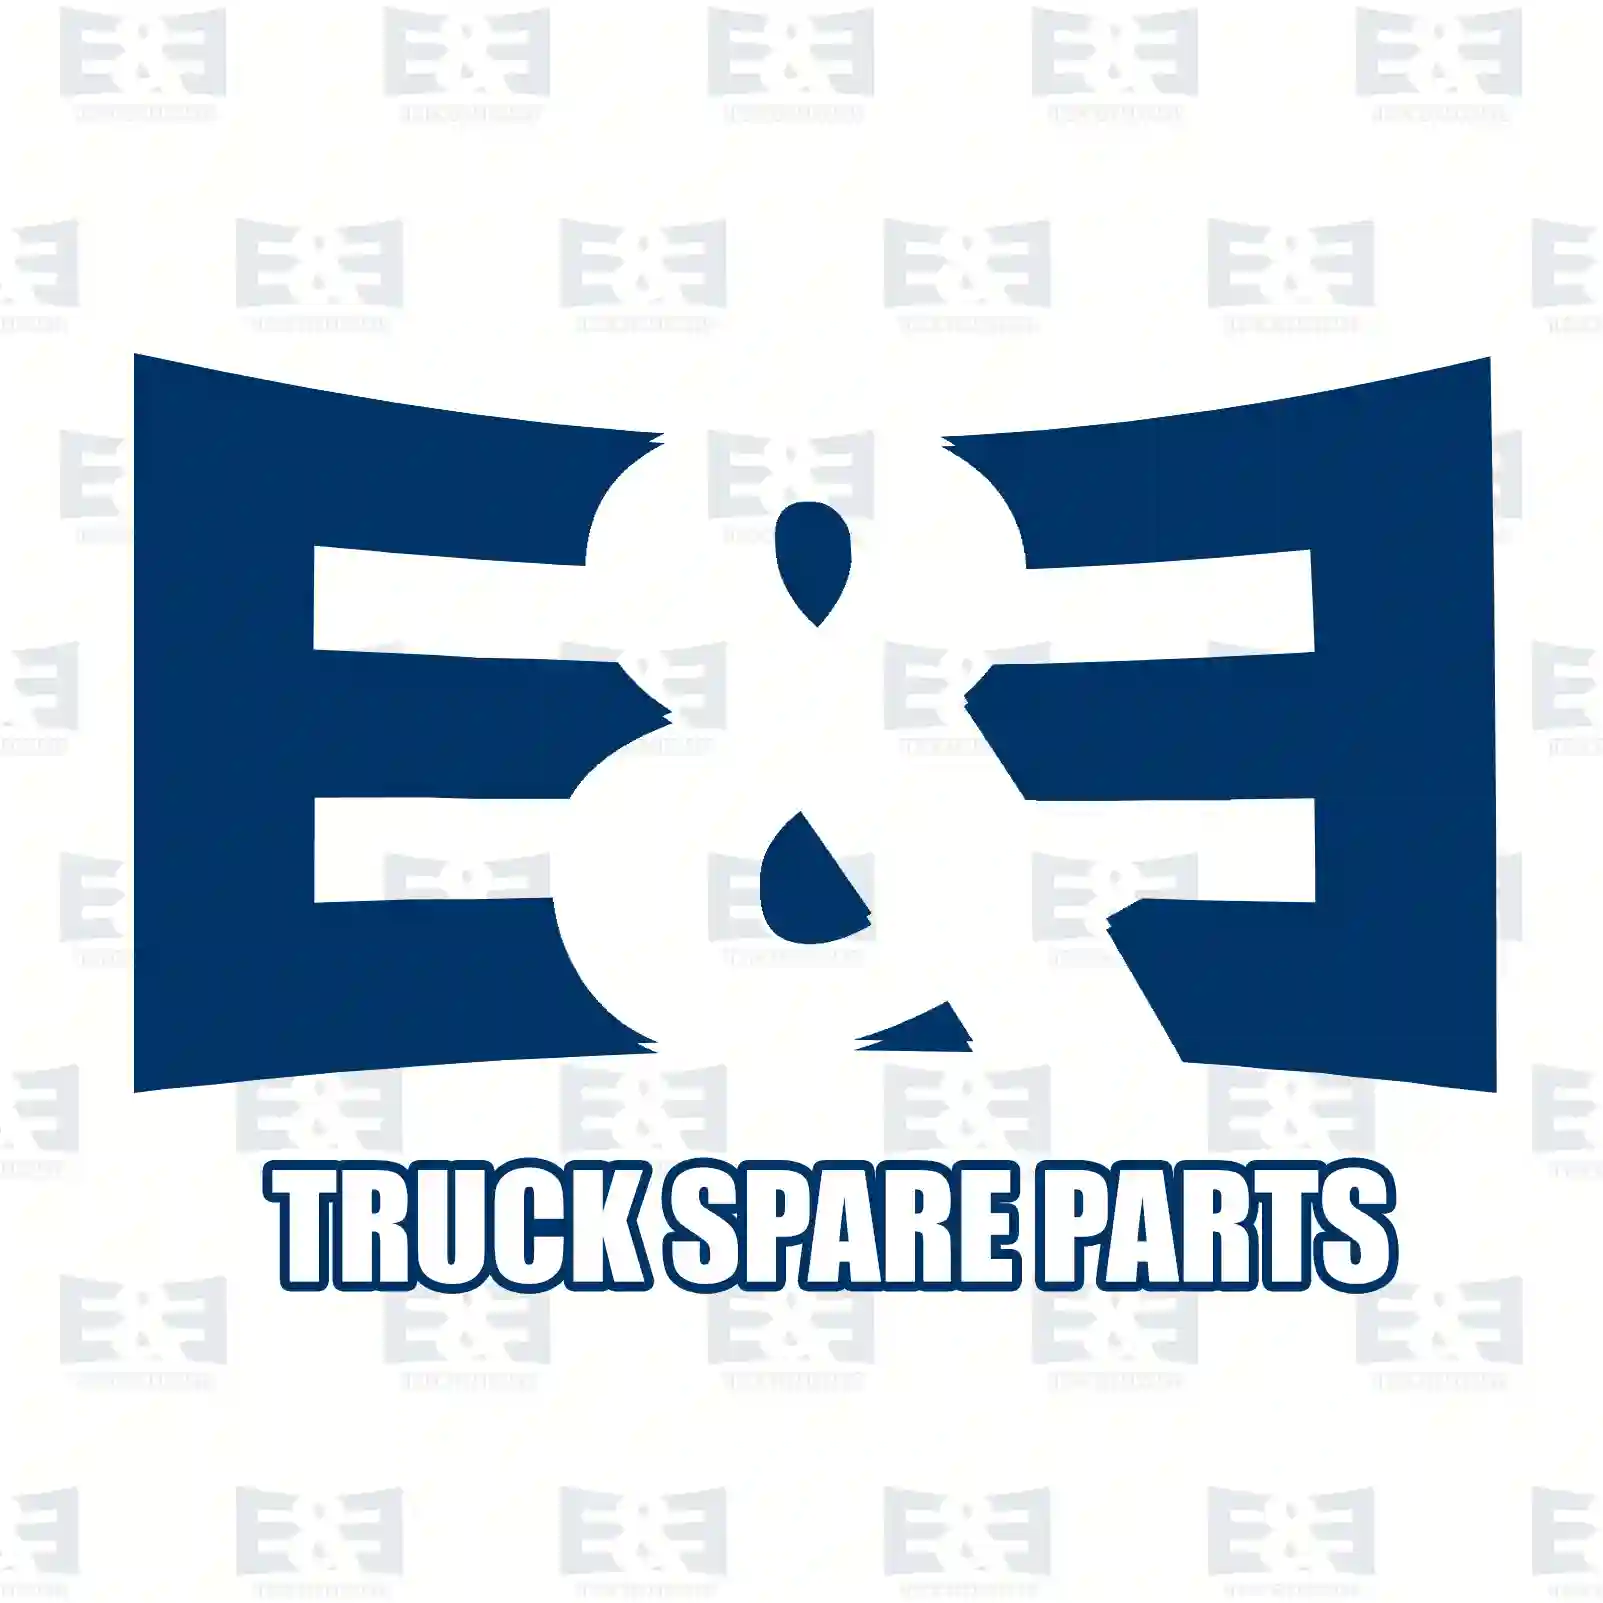 O-ring, yellow, 2E2275256, 7420443759, 1377375, 20443759, 3537507, ||  2E2275256 E&E Truck Spare Parts | Truck Spare Parts, Auotomotive Spare Parts O-ring, yellow, 2E2275256, 7420443759, 1377375, 20443759, 3537507, ||  2E2275256 E&E Truck Spare Parts | Truck Spare Parts, Auotomotive Spare Parts